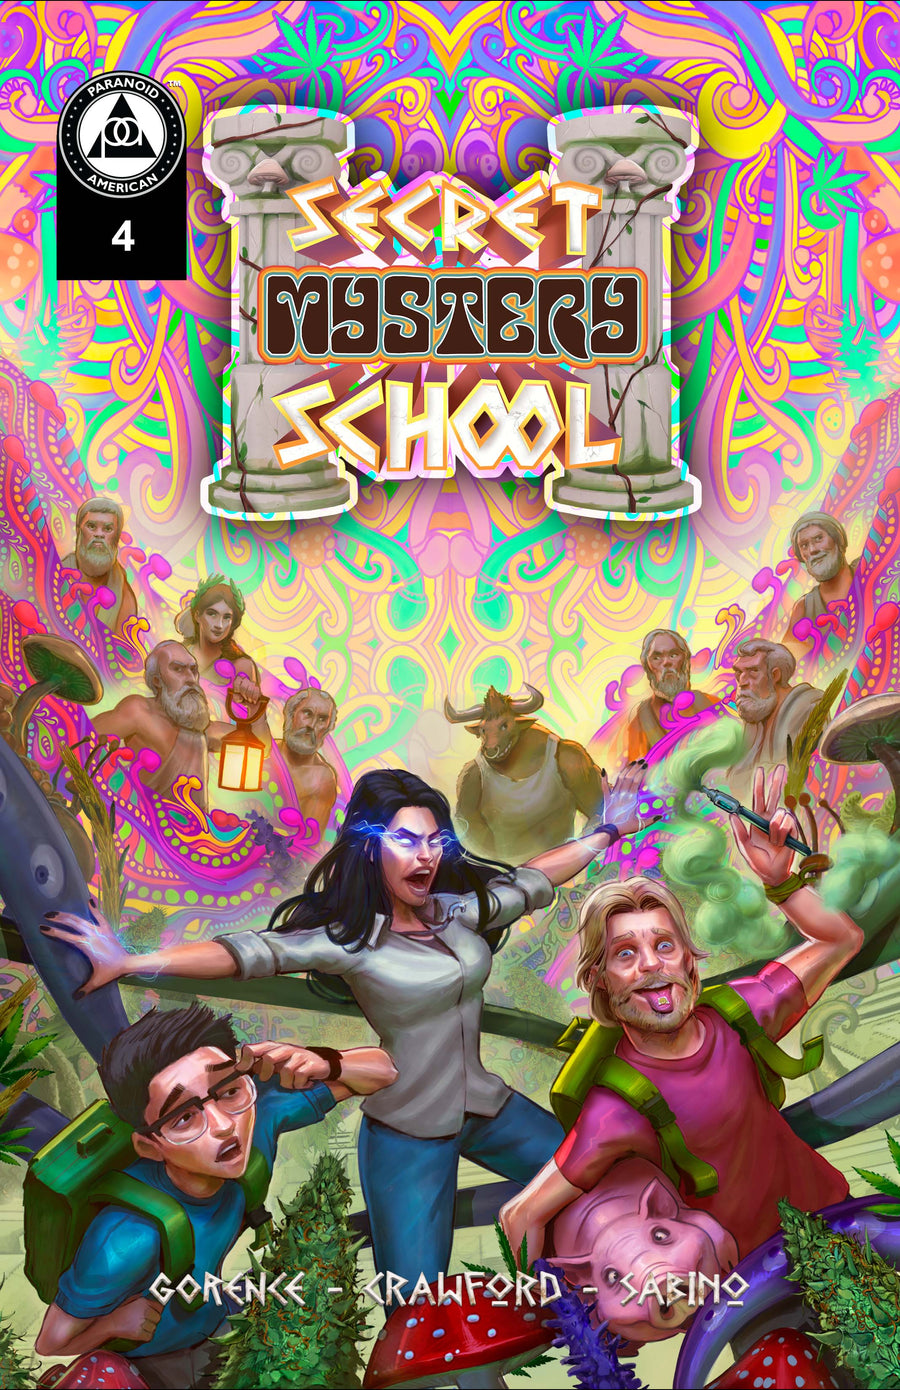 Secret Mystery School #4